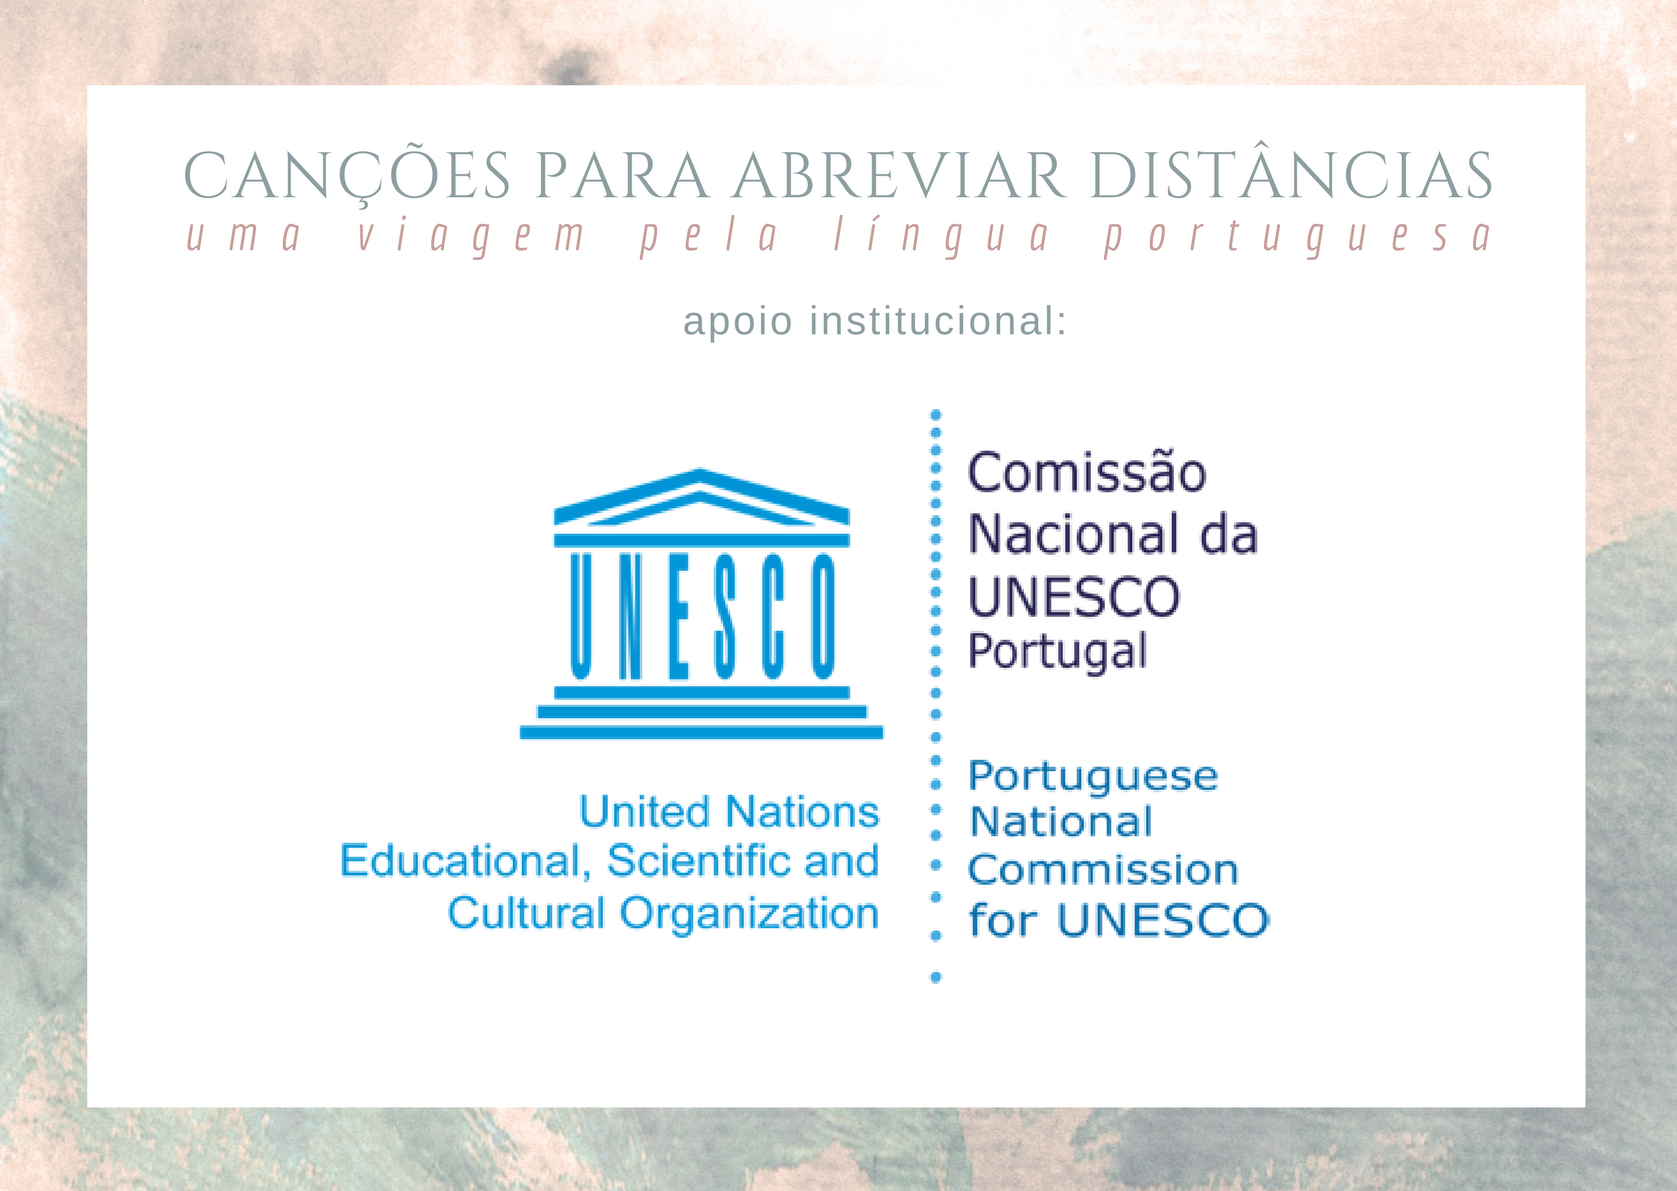 COMISSÃO NACIONAL DA UNESCO APOIA “CANÇÕES PARA ABREVIAR DISTÂNCIAS”